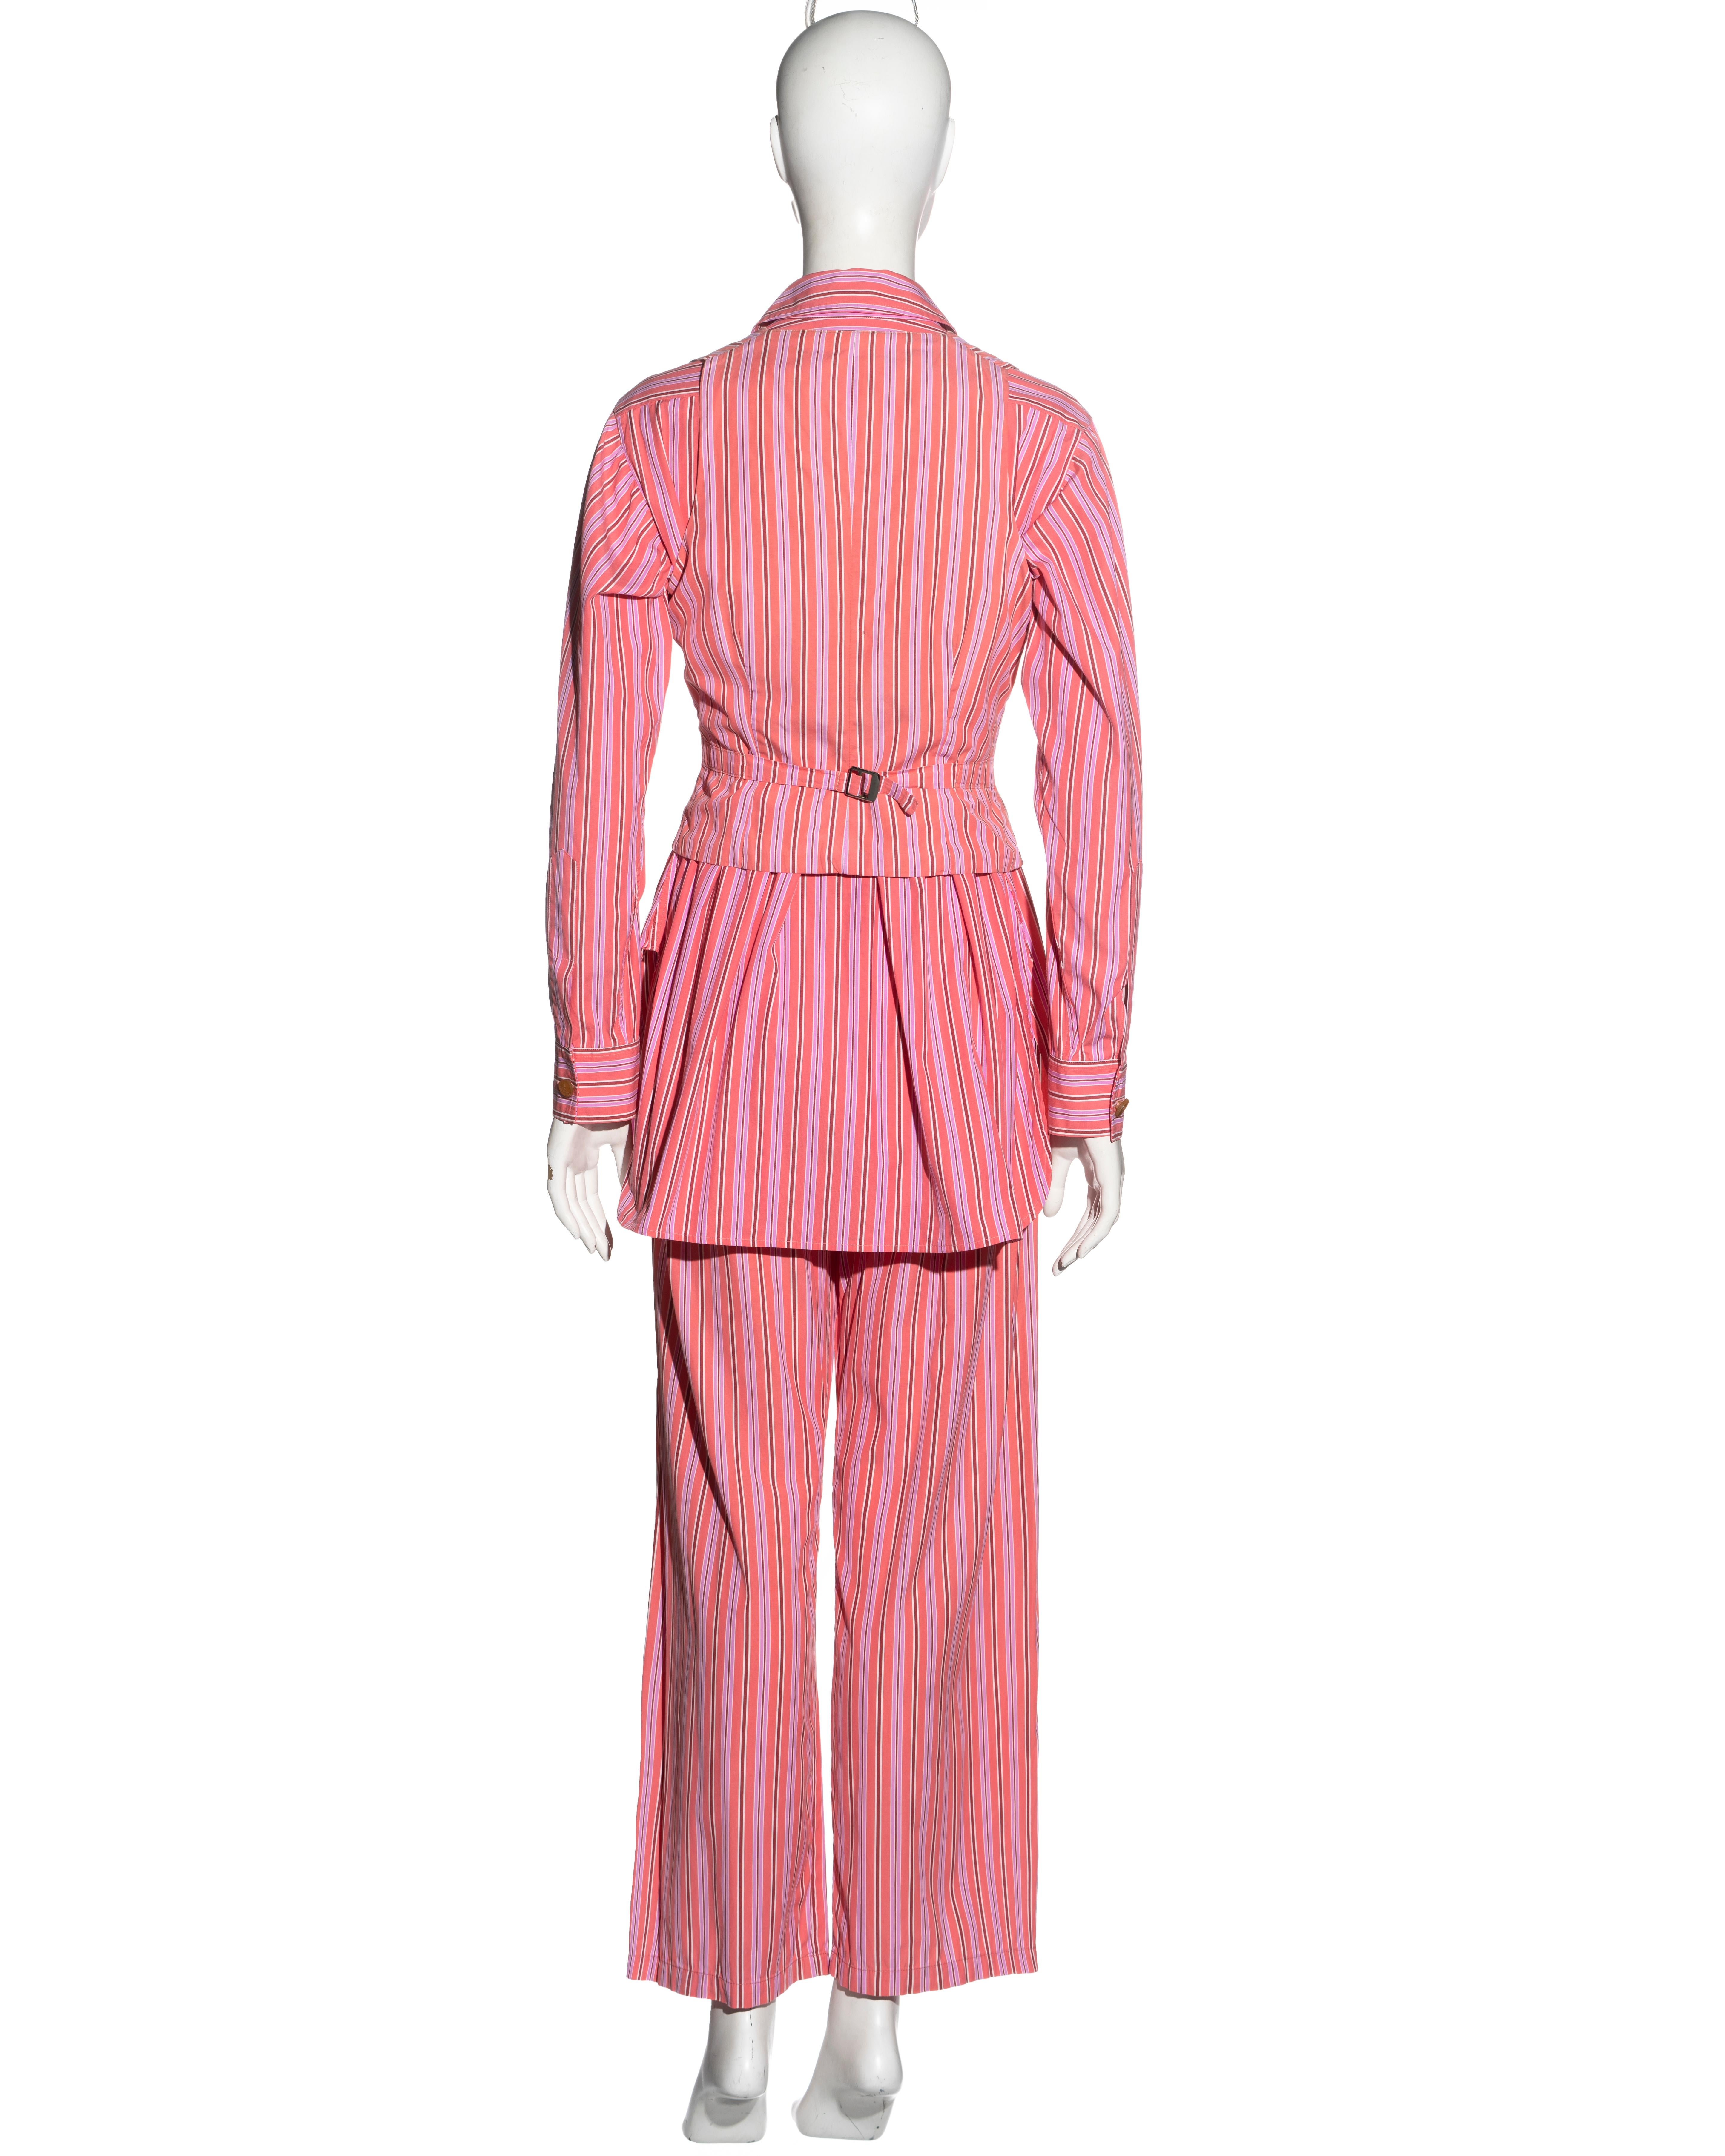 Vivienne Westwood pink striped cotton 3-piece suit, ss 1993 For Sale 10